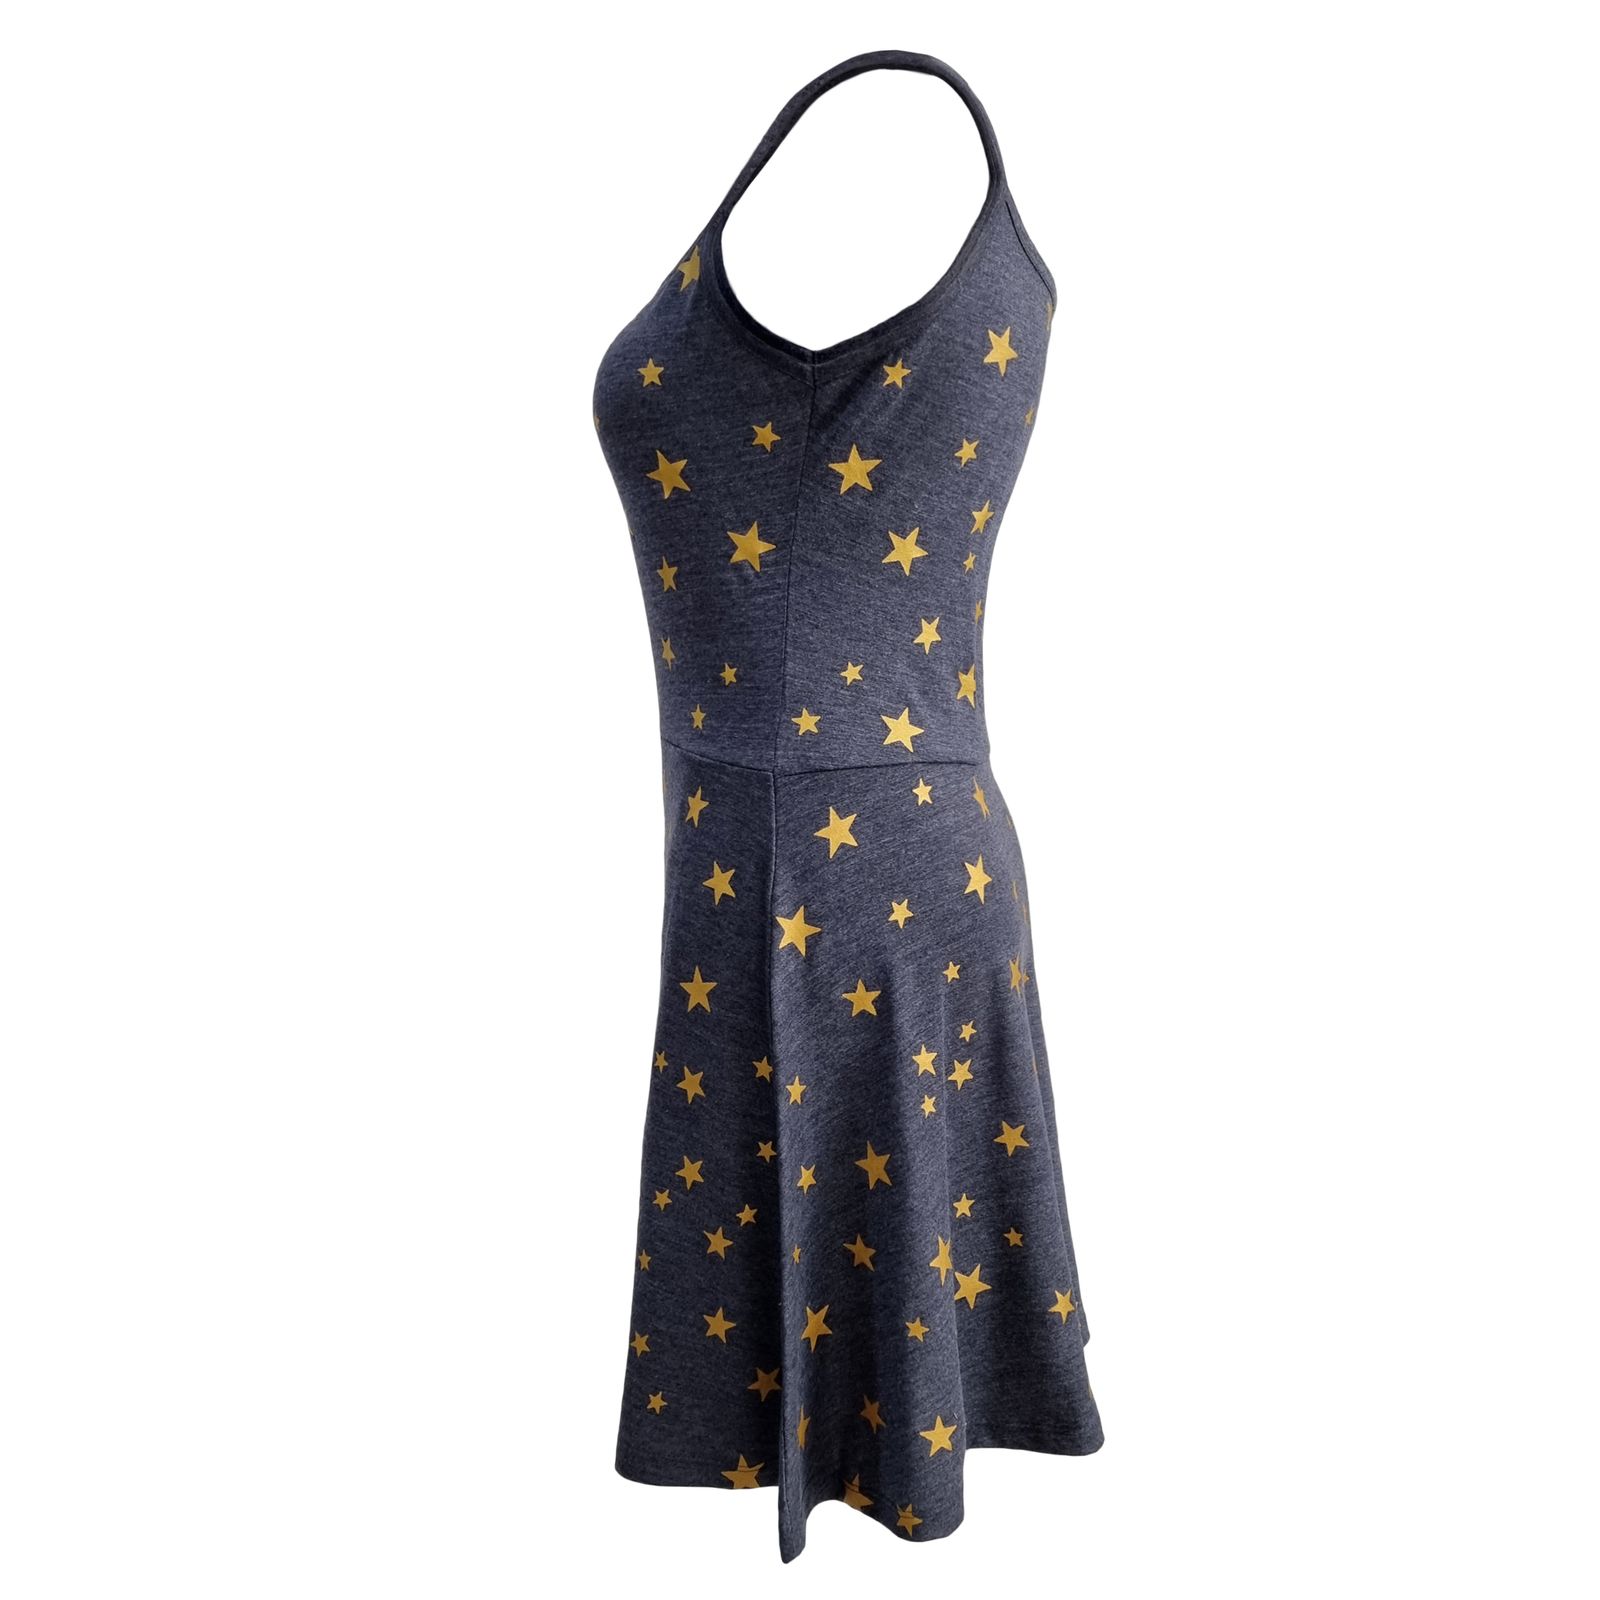 پیراهن زنانه افراتین مدل ستاره کد 9531 رنگ طوسی -  - 3